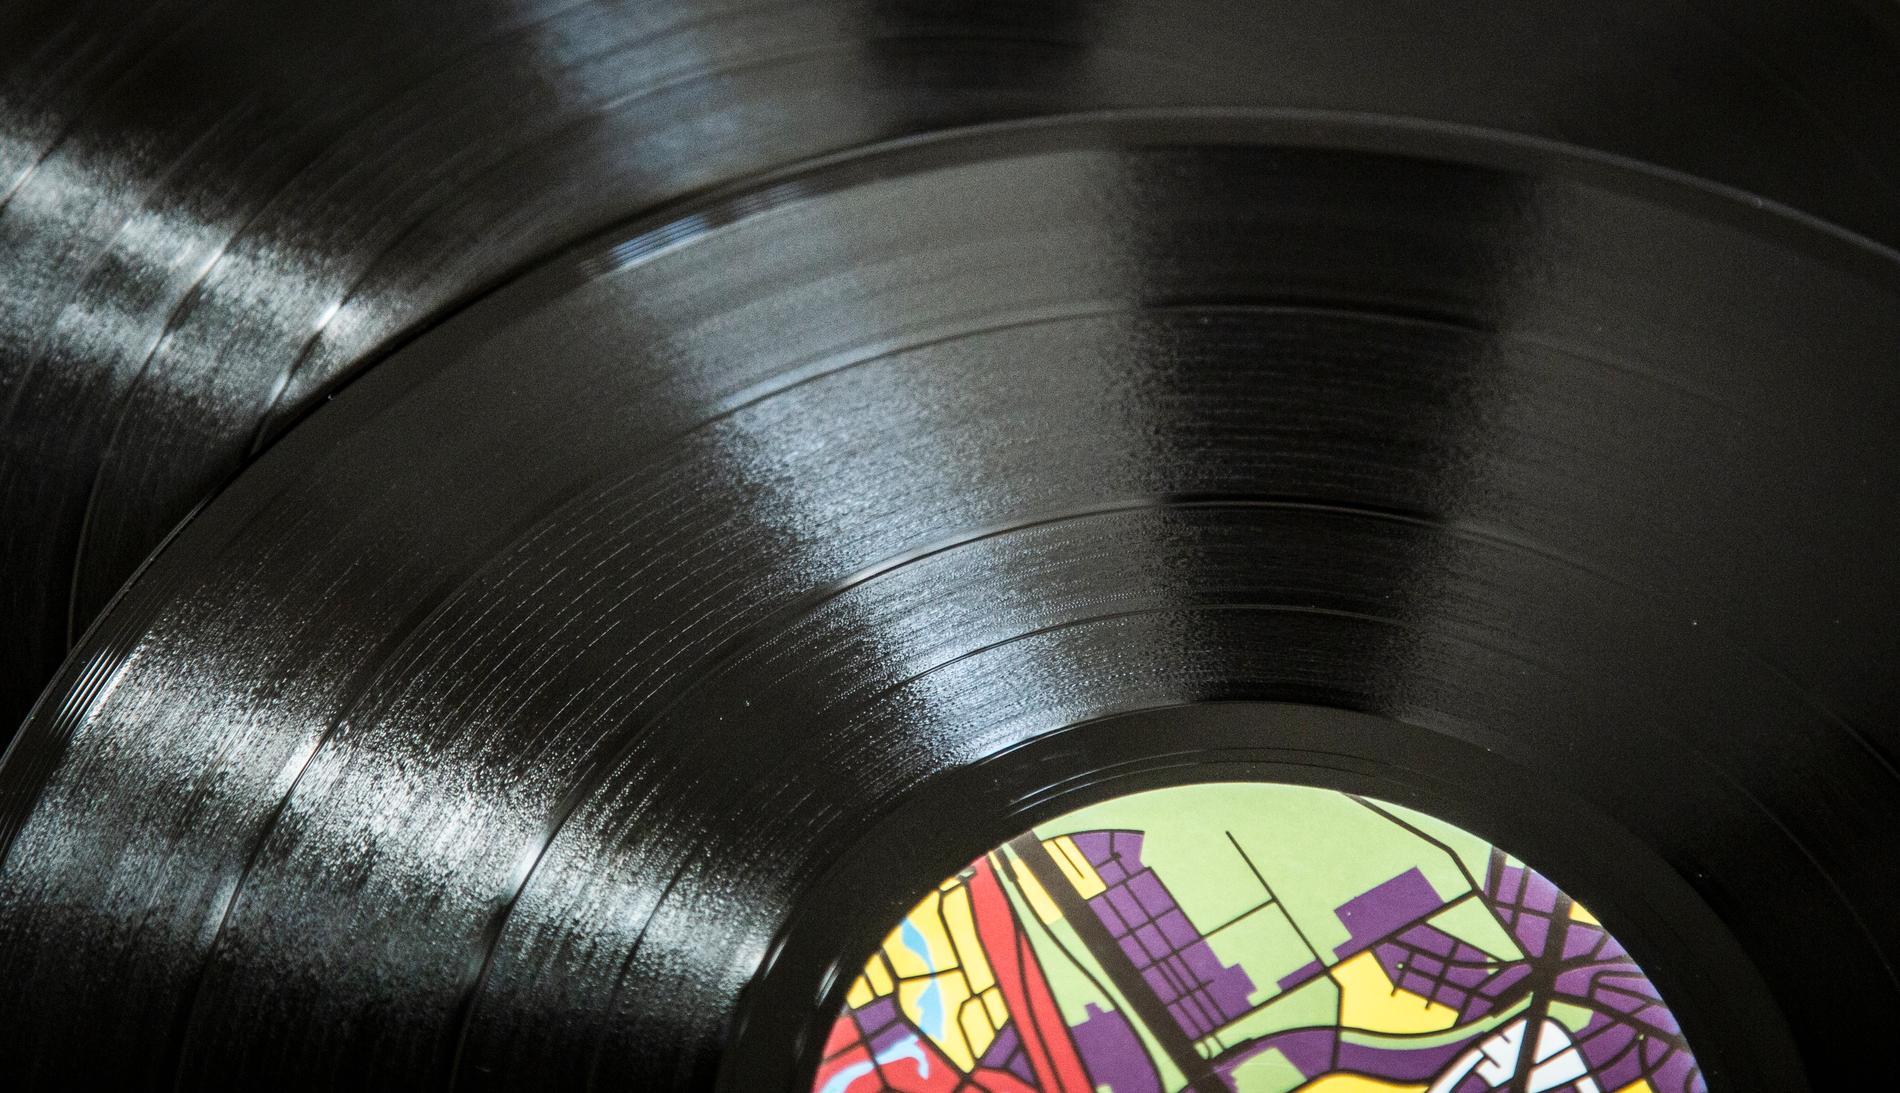 Traditionella LP-skivor, eller vinylskivor, tillverkas av PVC som beskrivs av Greenpeace som "den mest miljöskadliga plasten". Arkivbild.